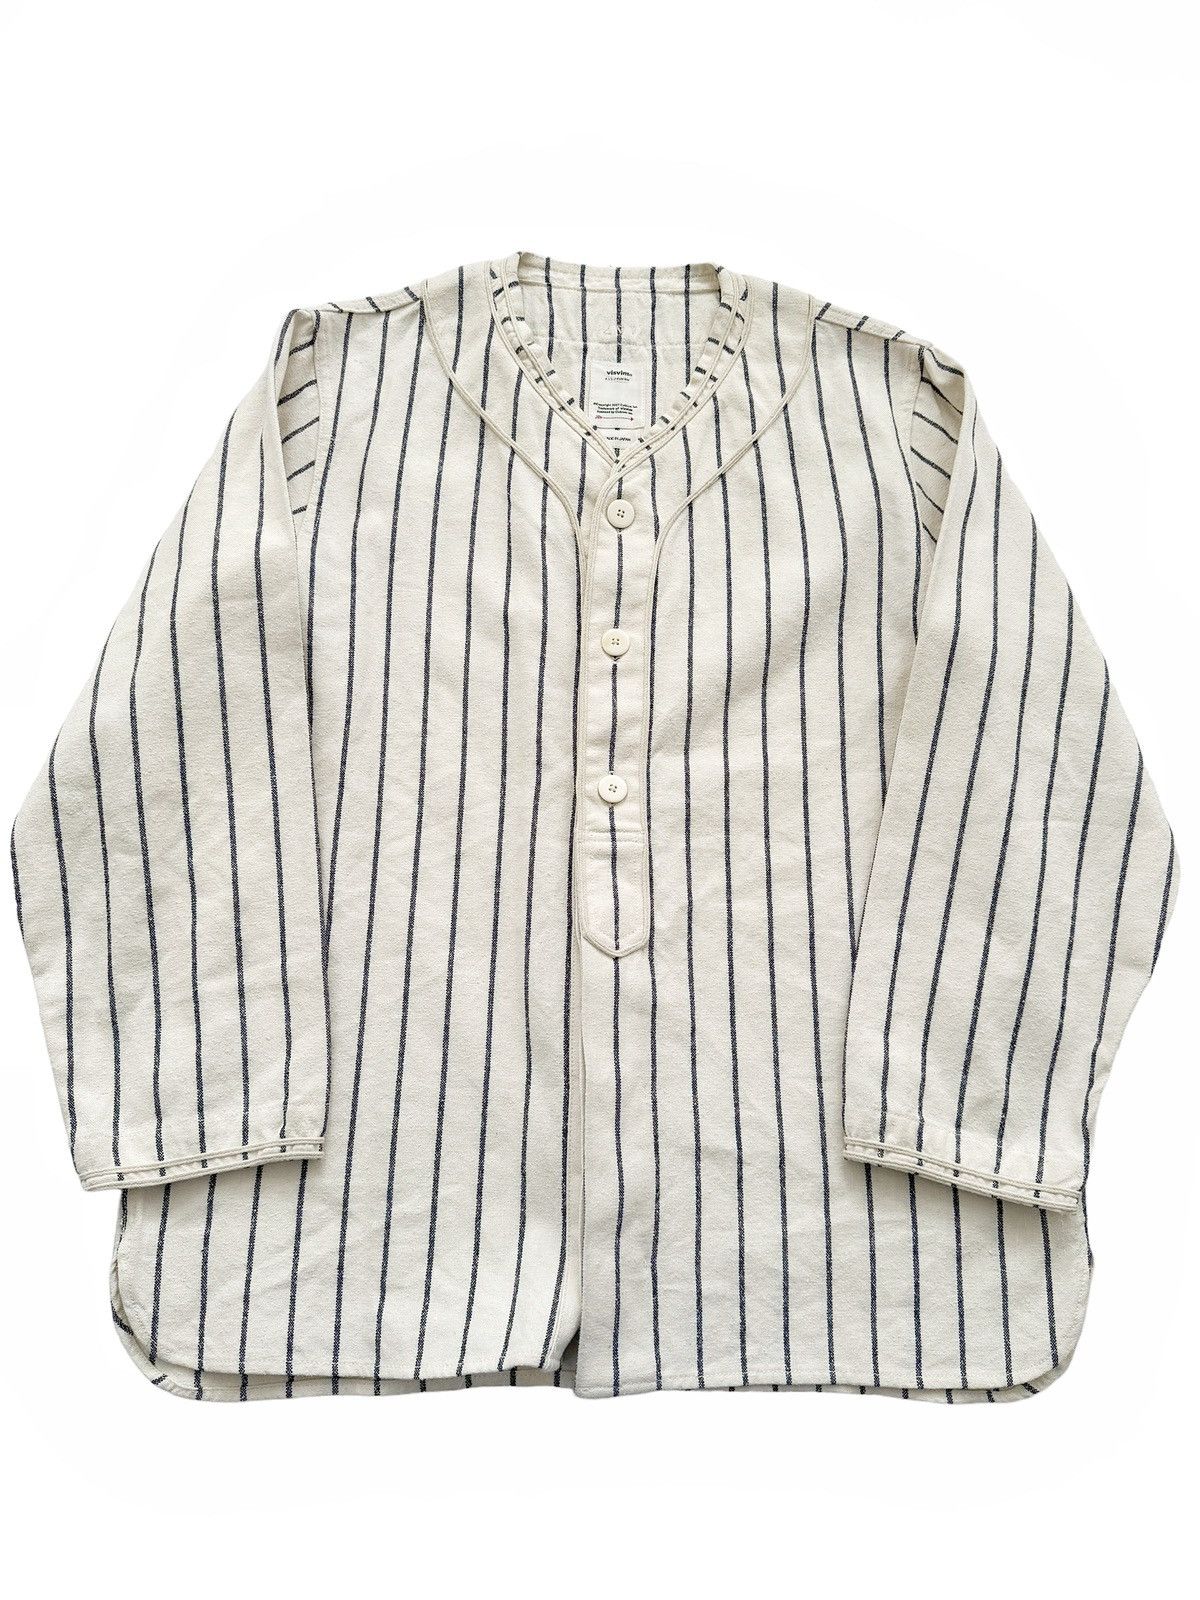 Visvim Sz2 Cream Linen/Silk/Cotton Dugout Baseball Shirt | Grailed